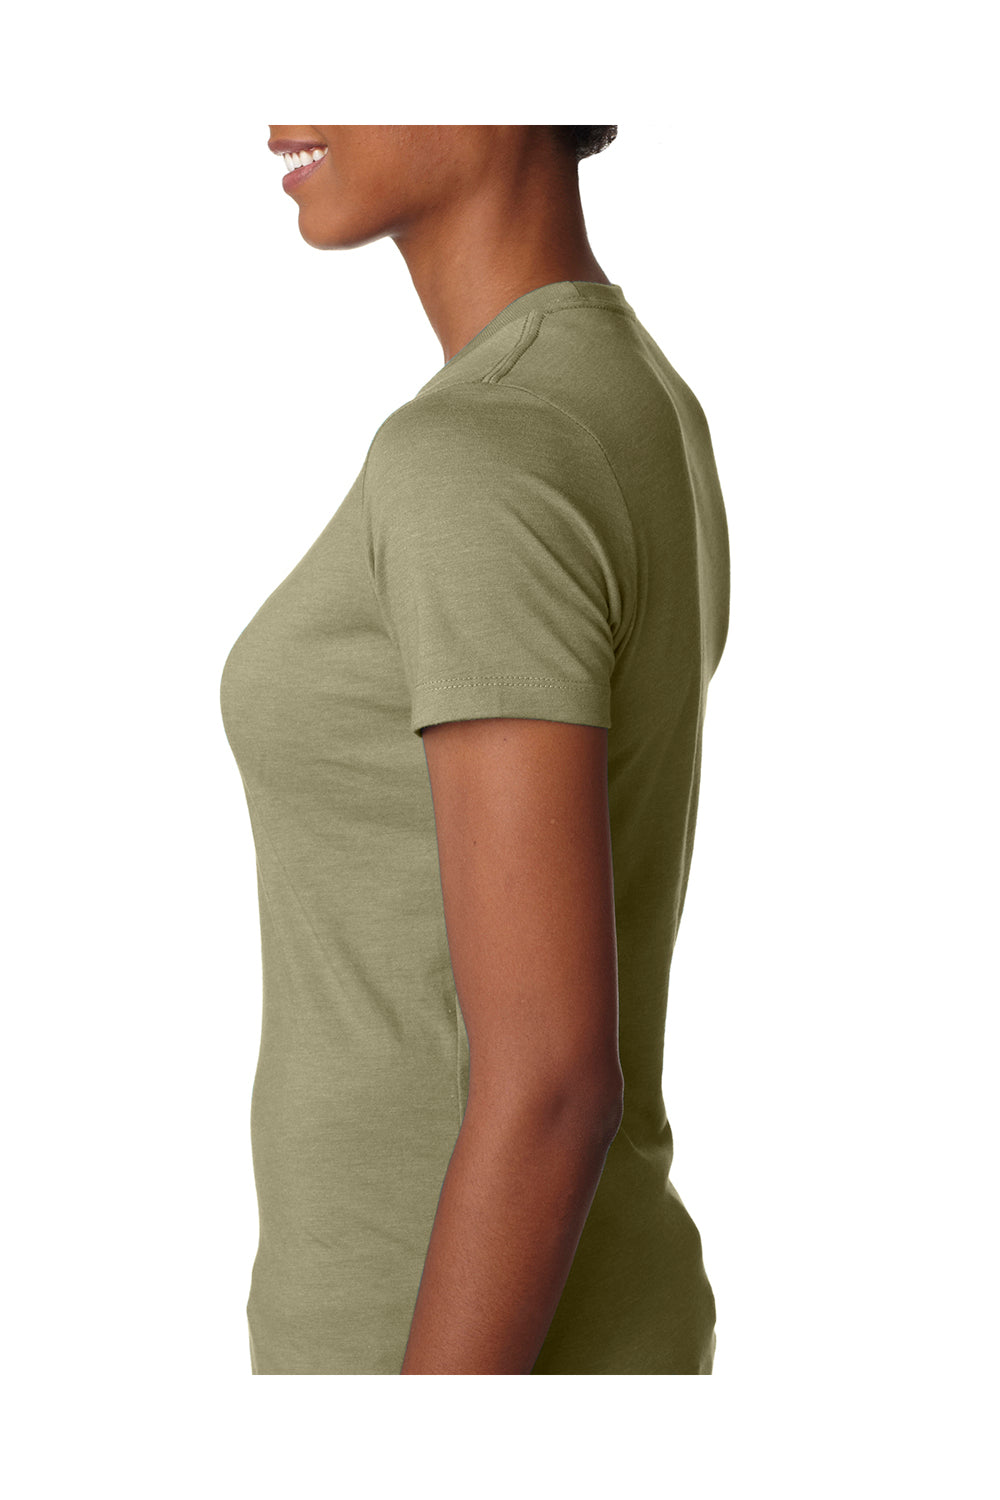 Next Level 6610 Womens CVC Jersey Short Sleeve Crewneck T-Shirt Light Olive Green Side